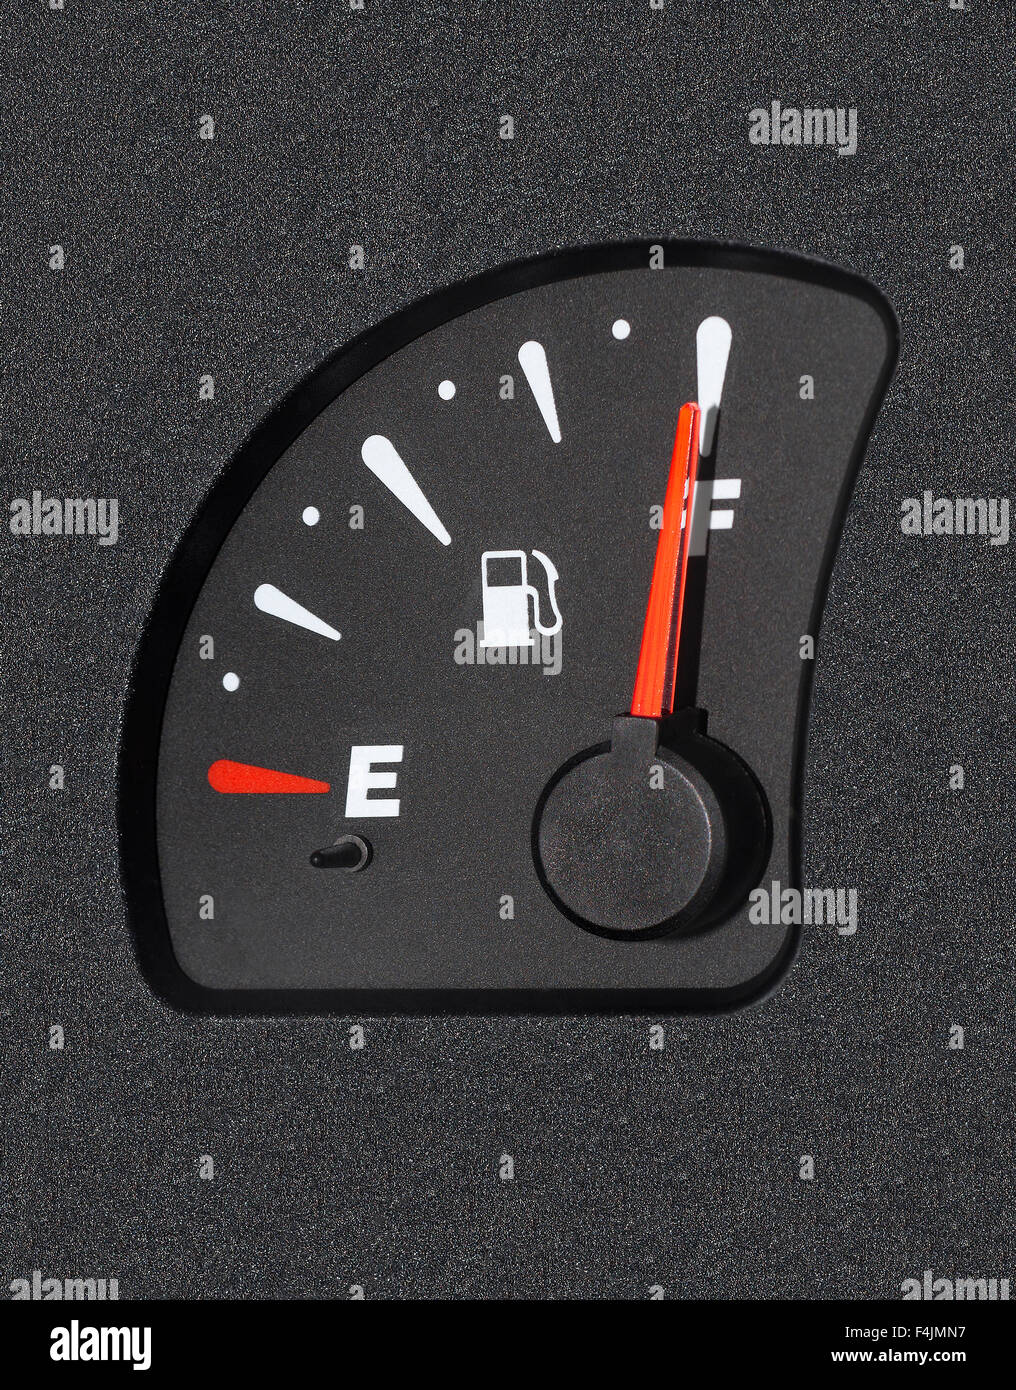 Ein Auto Kraftstoff Manometer zeigt vollen tank Stockfotografie - Alamy